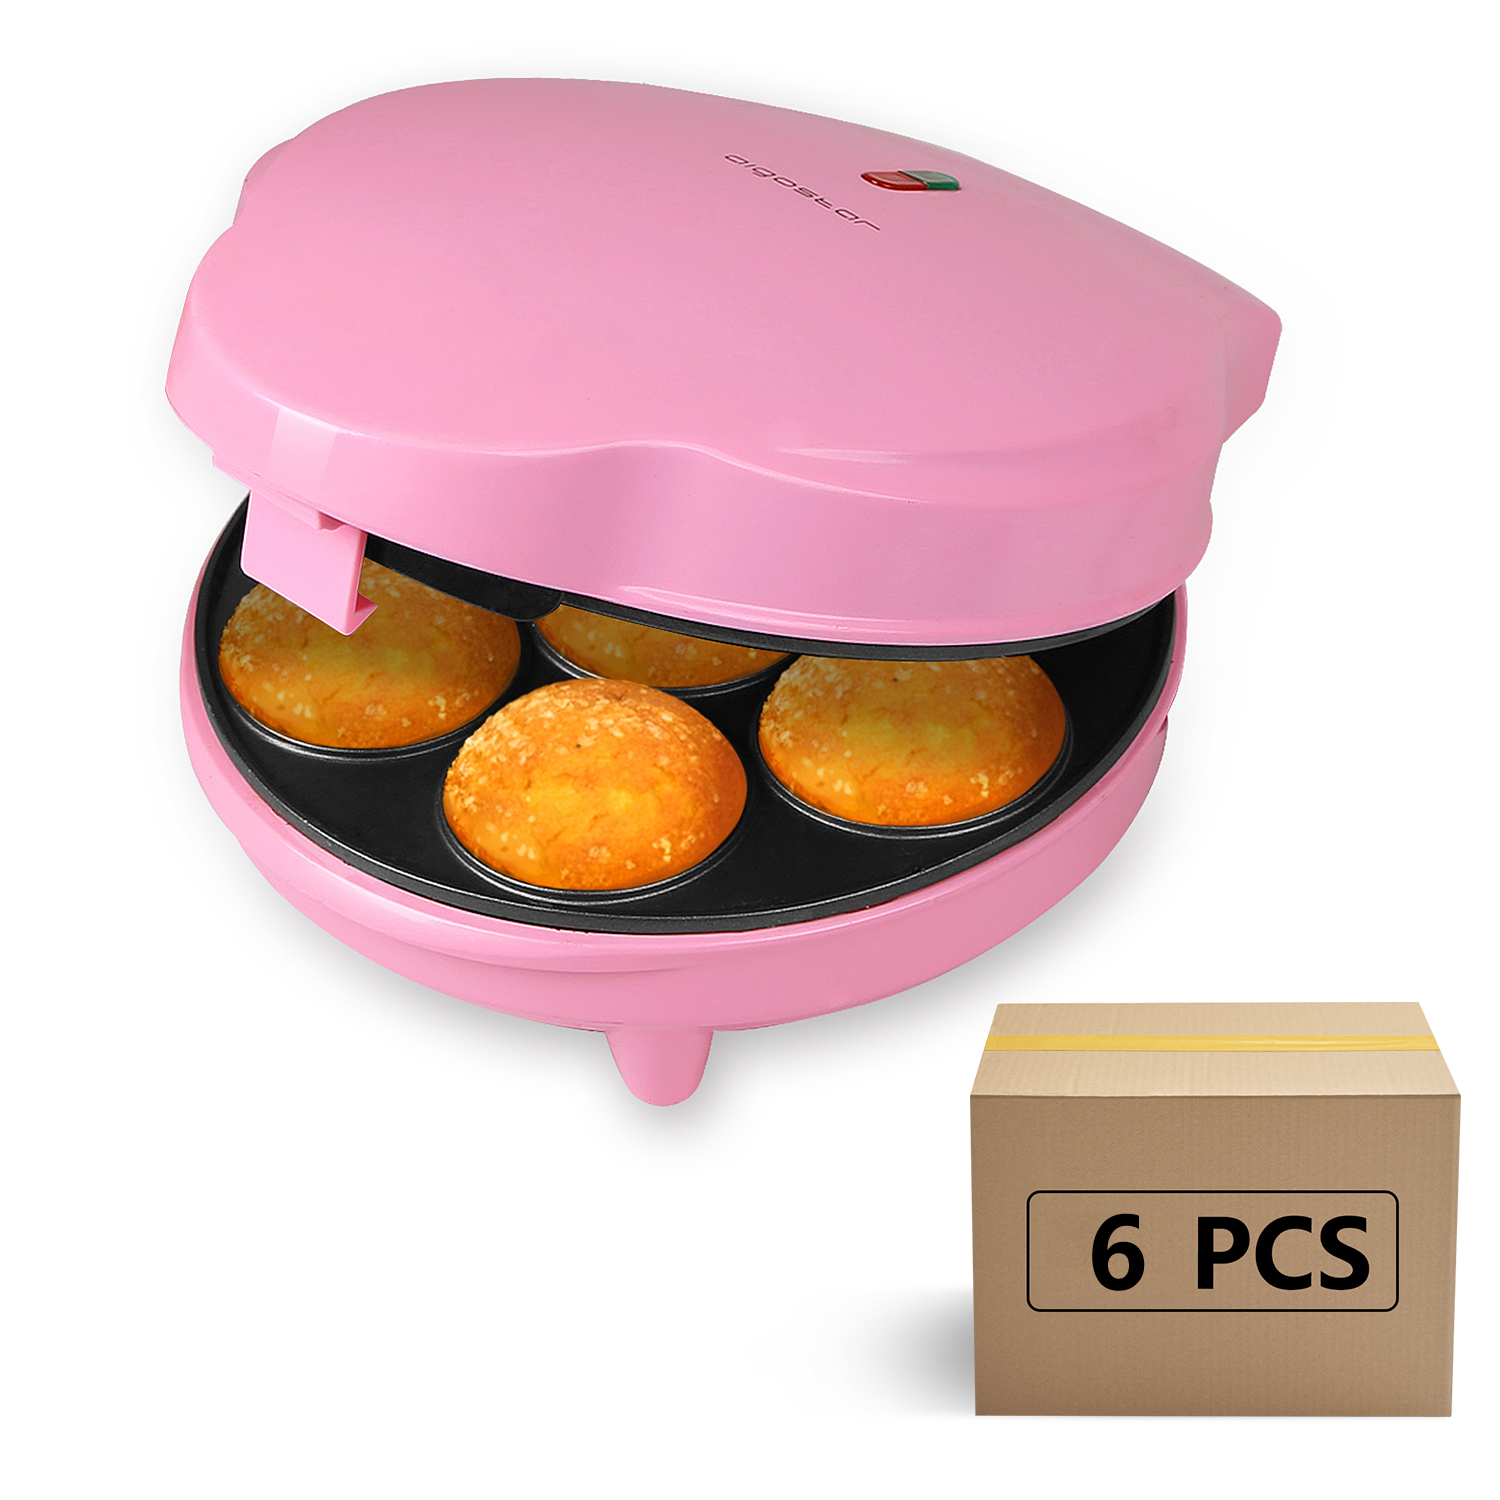 Macchina per Cupcake/Muffin con 7 fori Aigostar Popcaker Pink 30CEU Piatti Antiaderenti Design esclusivo. 700 Watt 